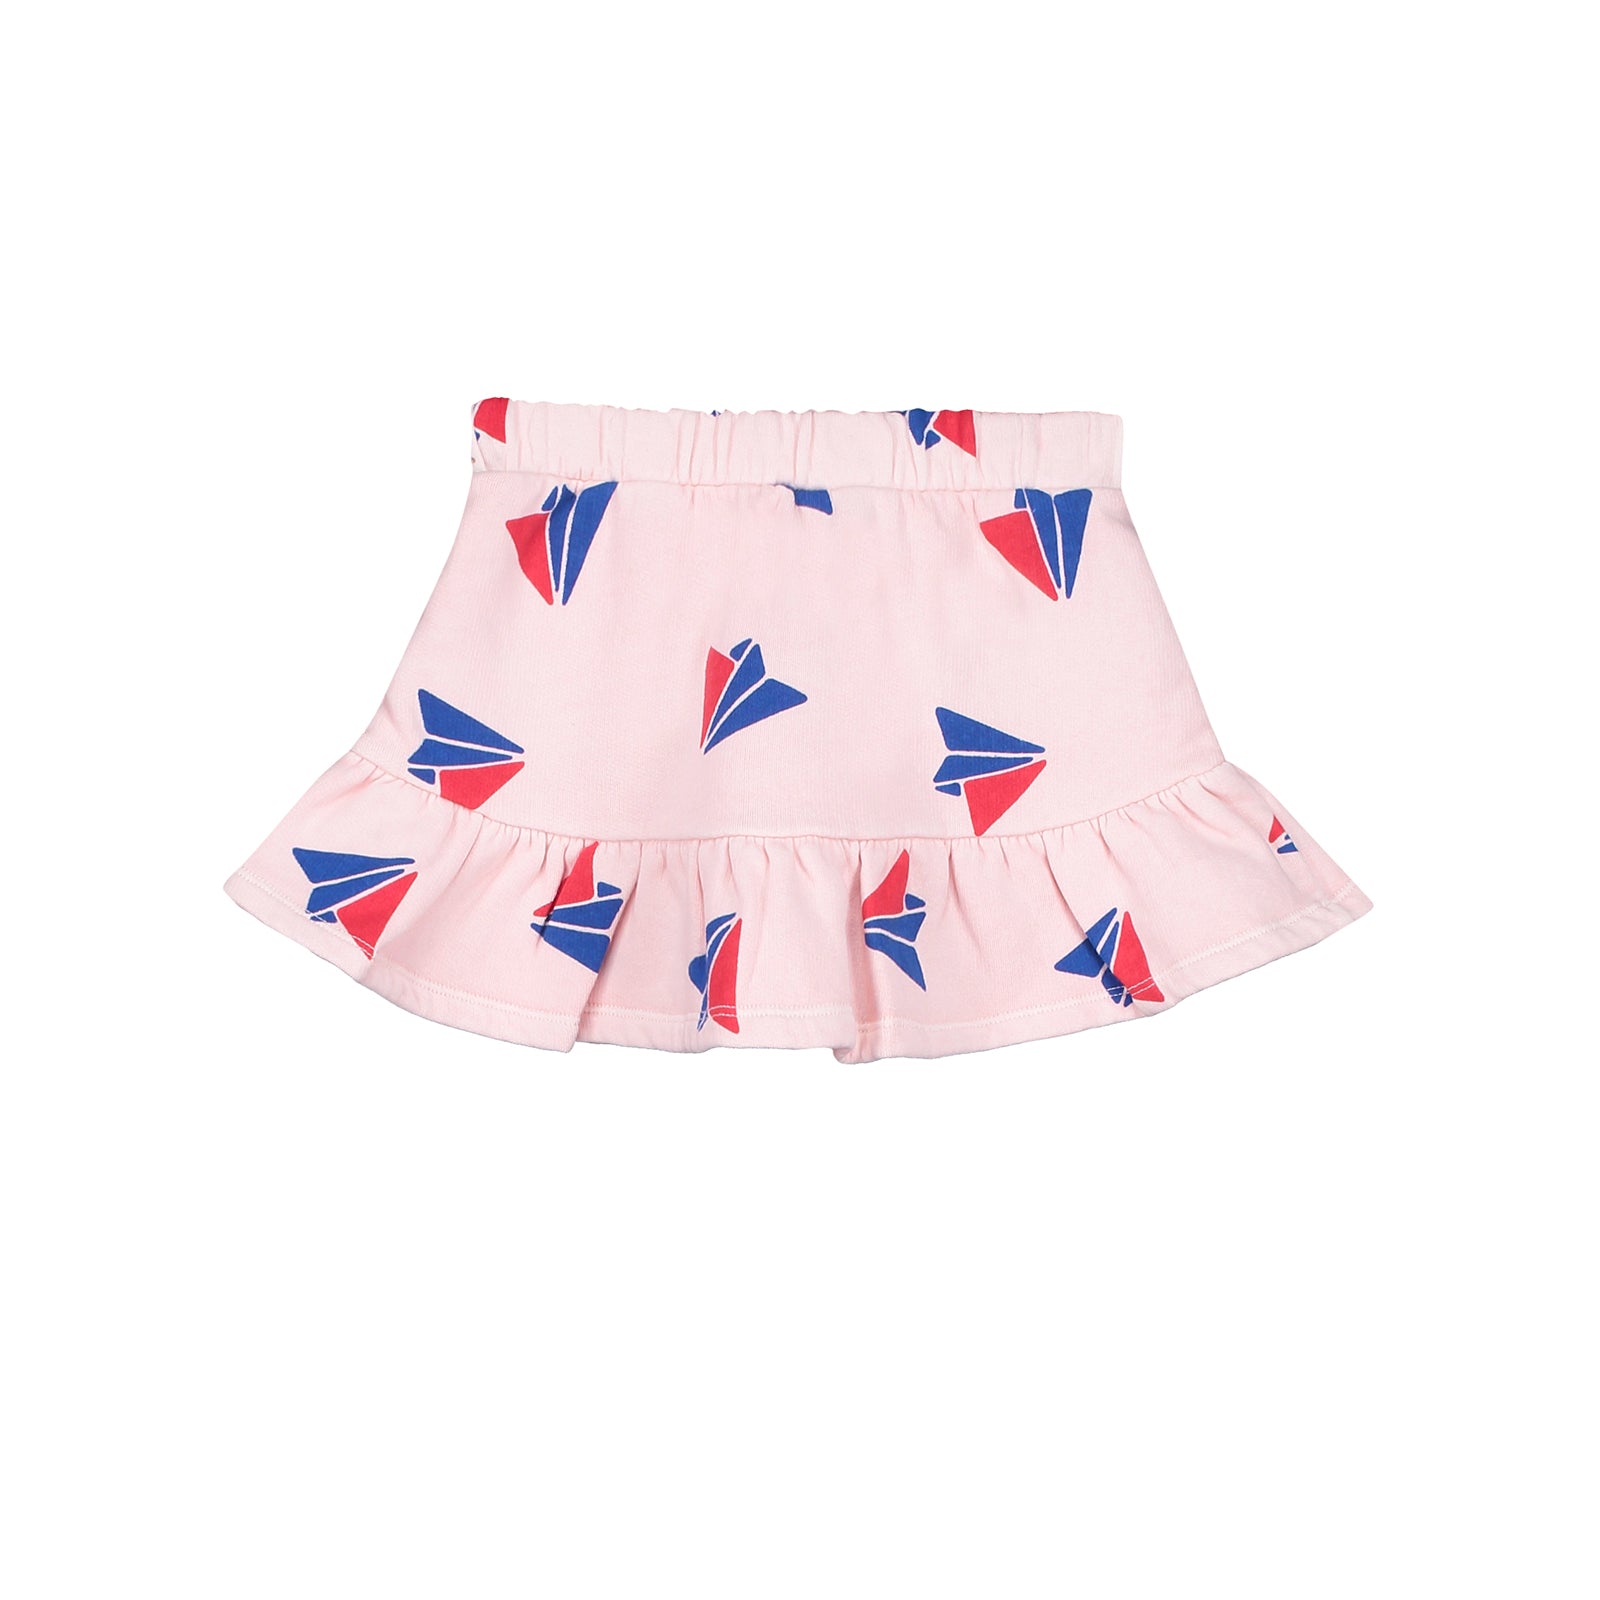 Girls Pink Printed Cotton Skirt